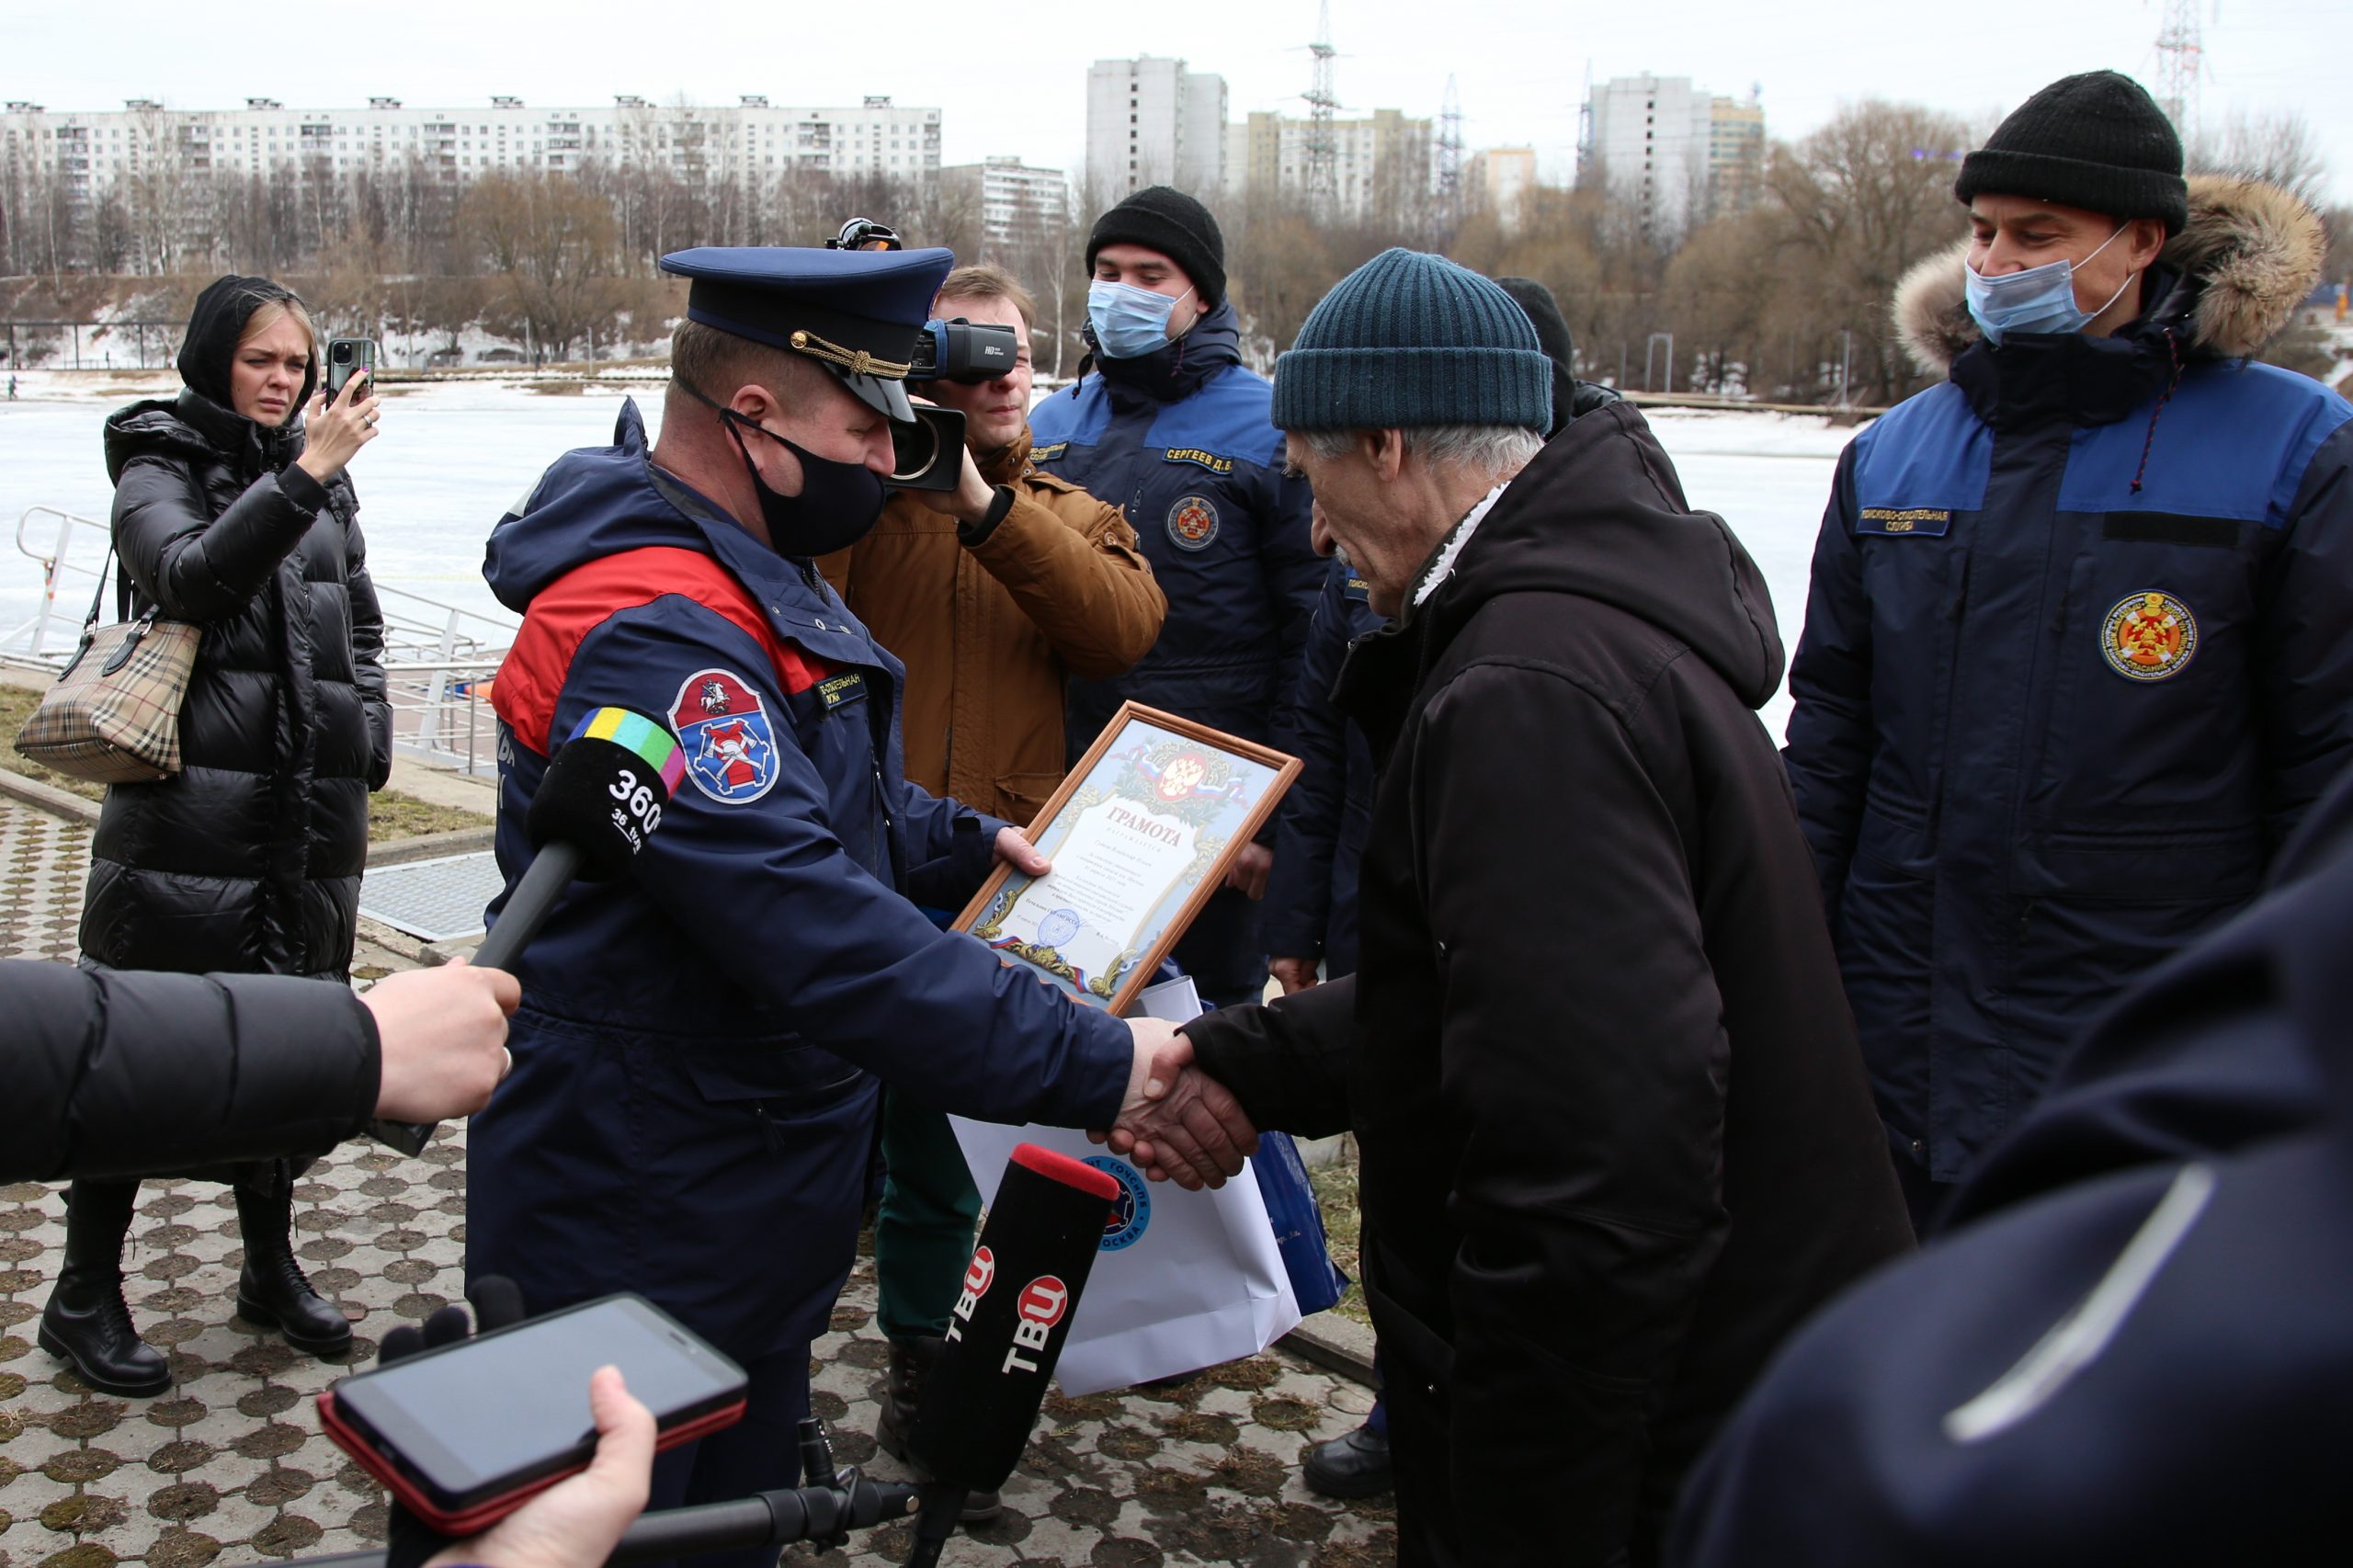 Спасший ребенка на канале им. Москвы мужчина награжден благодарственной грамотой. Фото предоставлено пресс-службой Департамента ГОЧСиПБ